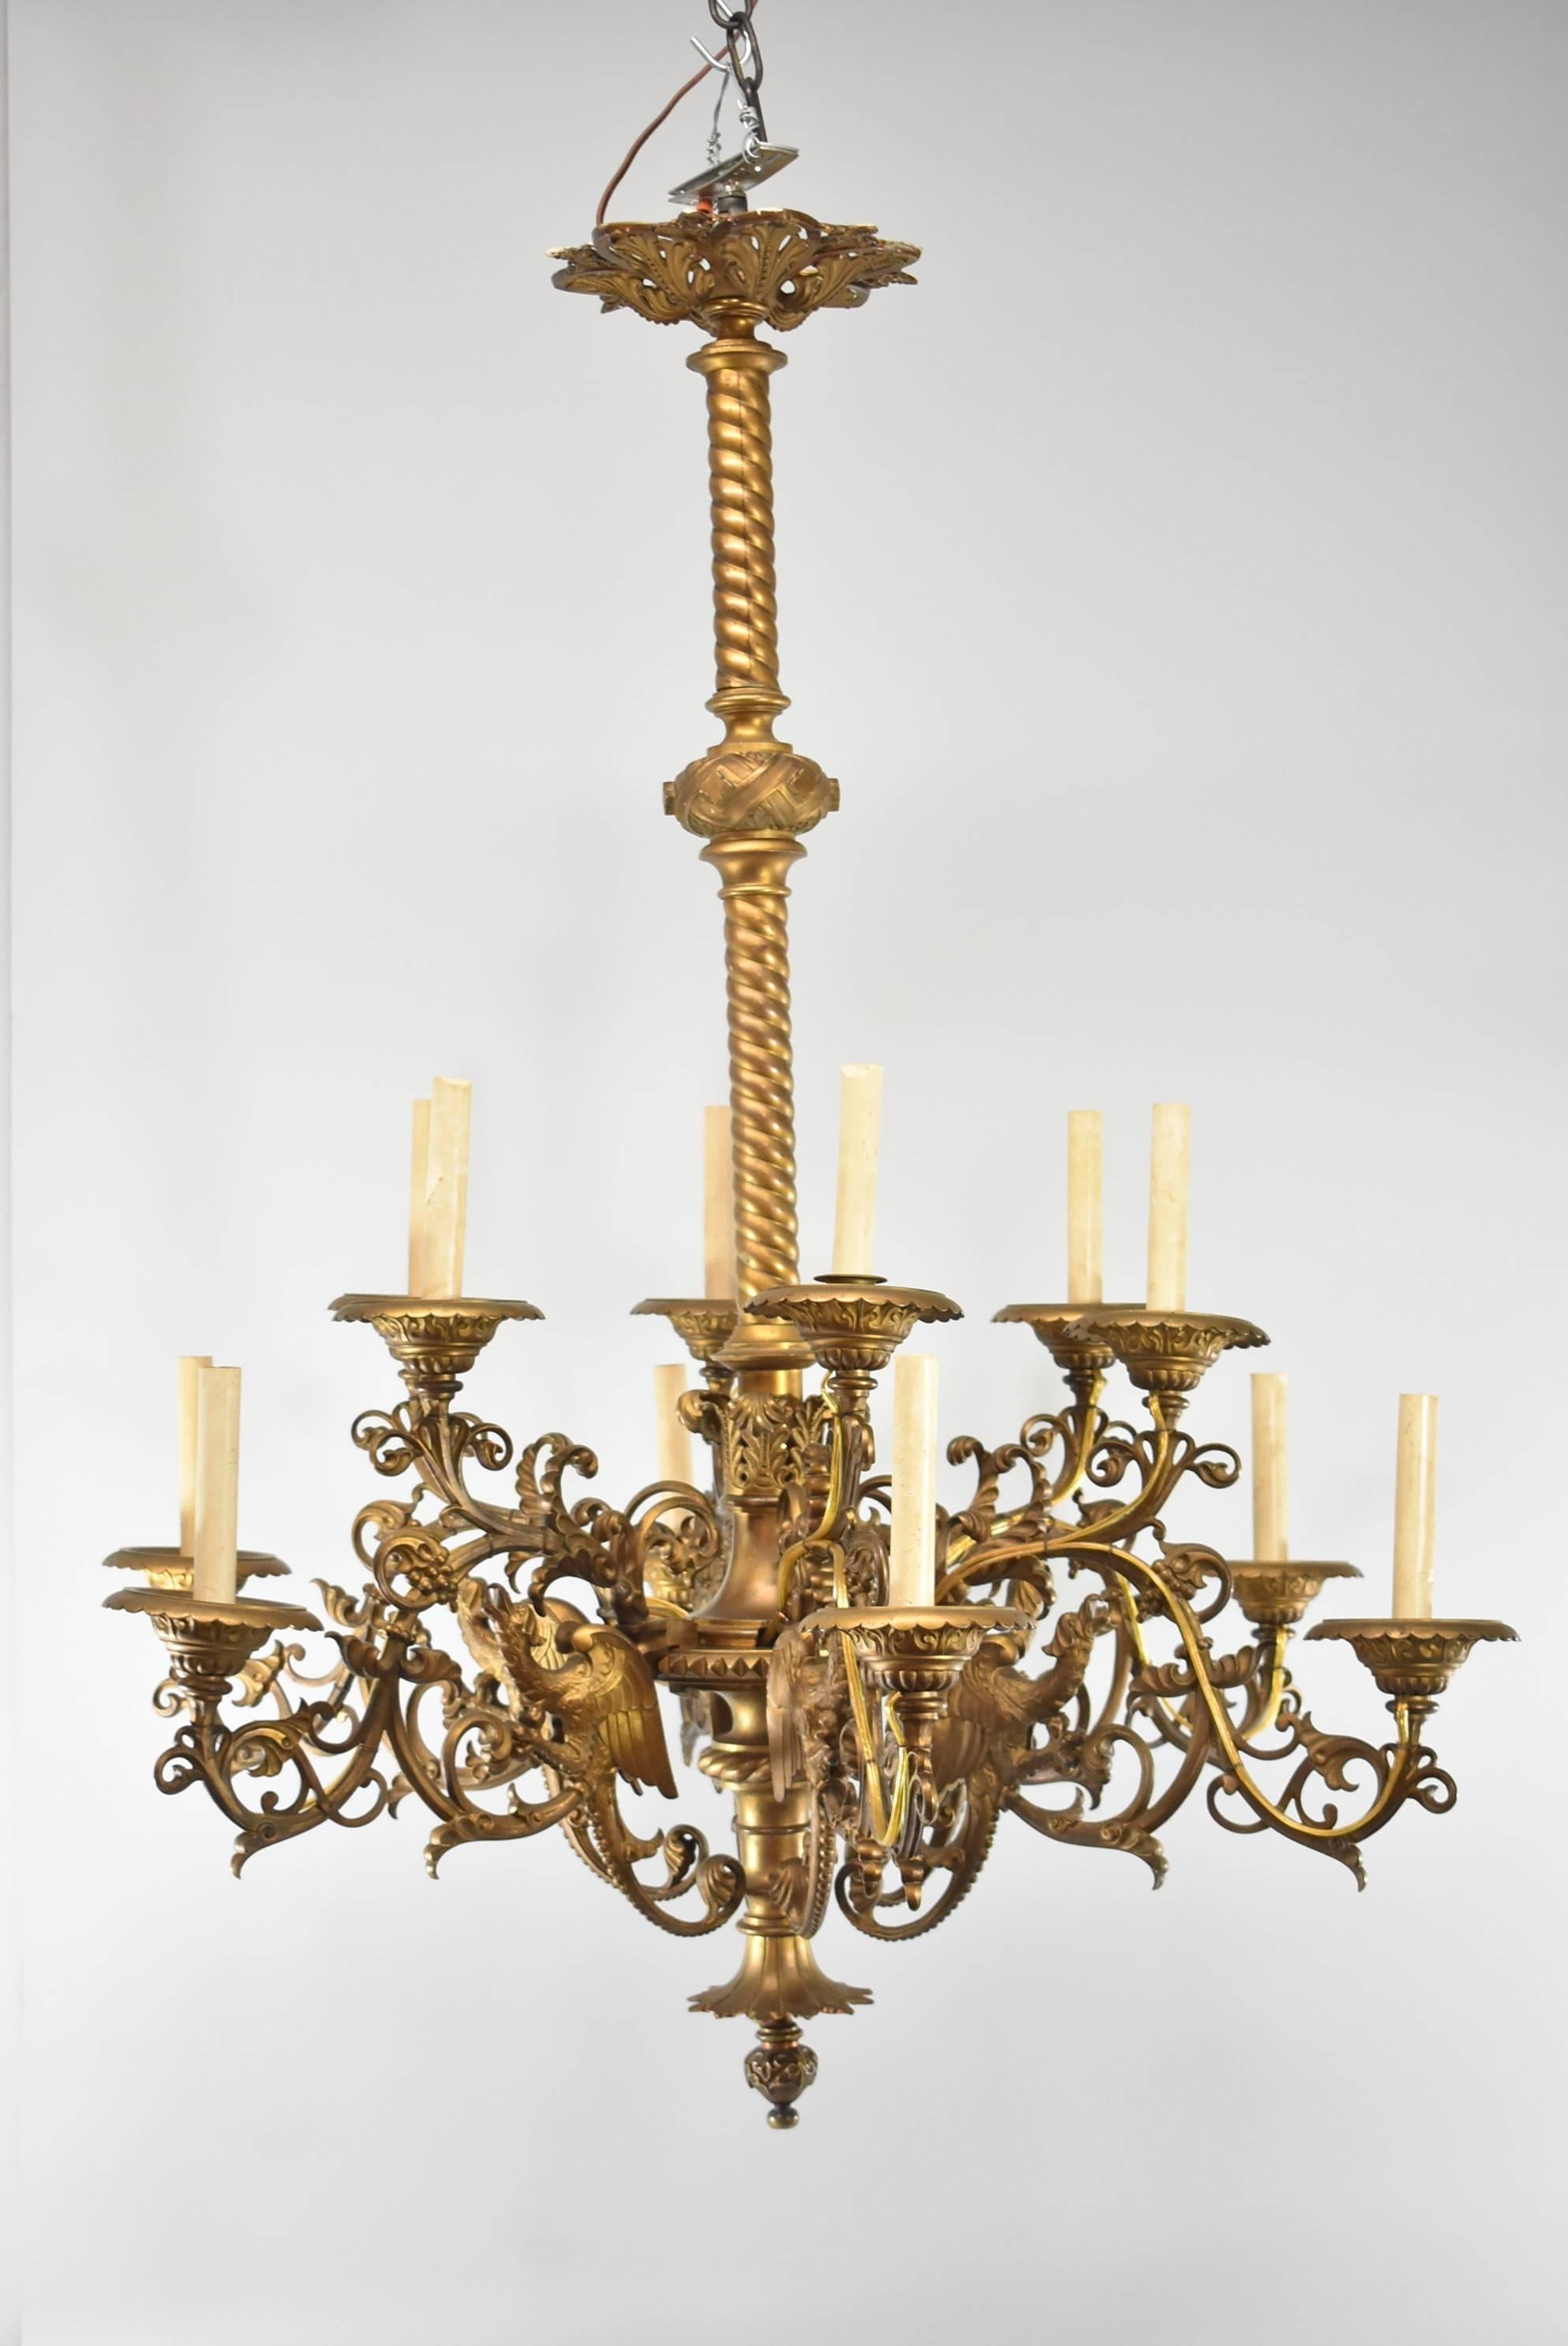 Un magnifique lustre à grande échelle en bronze avec une finition dorée. Elle comporte six bras avec un total de 12 lumières. Chaque bras à volutes est orné d'un oiseau mythique ailé et de raisins. Il est doté d'un centre en corde torsadée. Il est